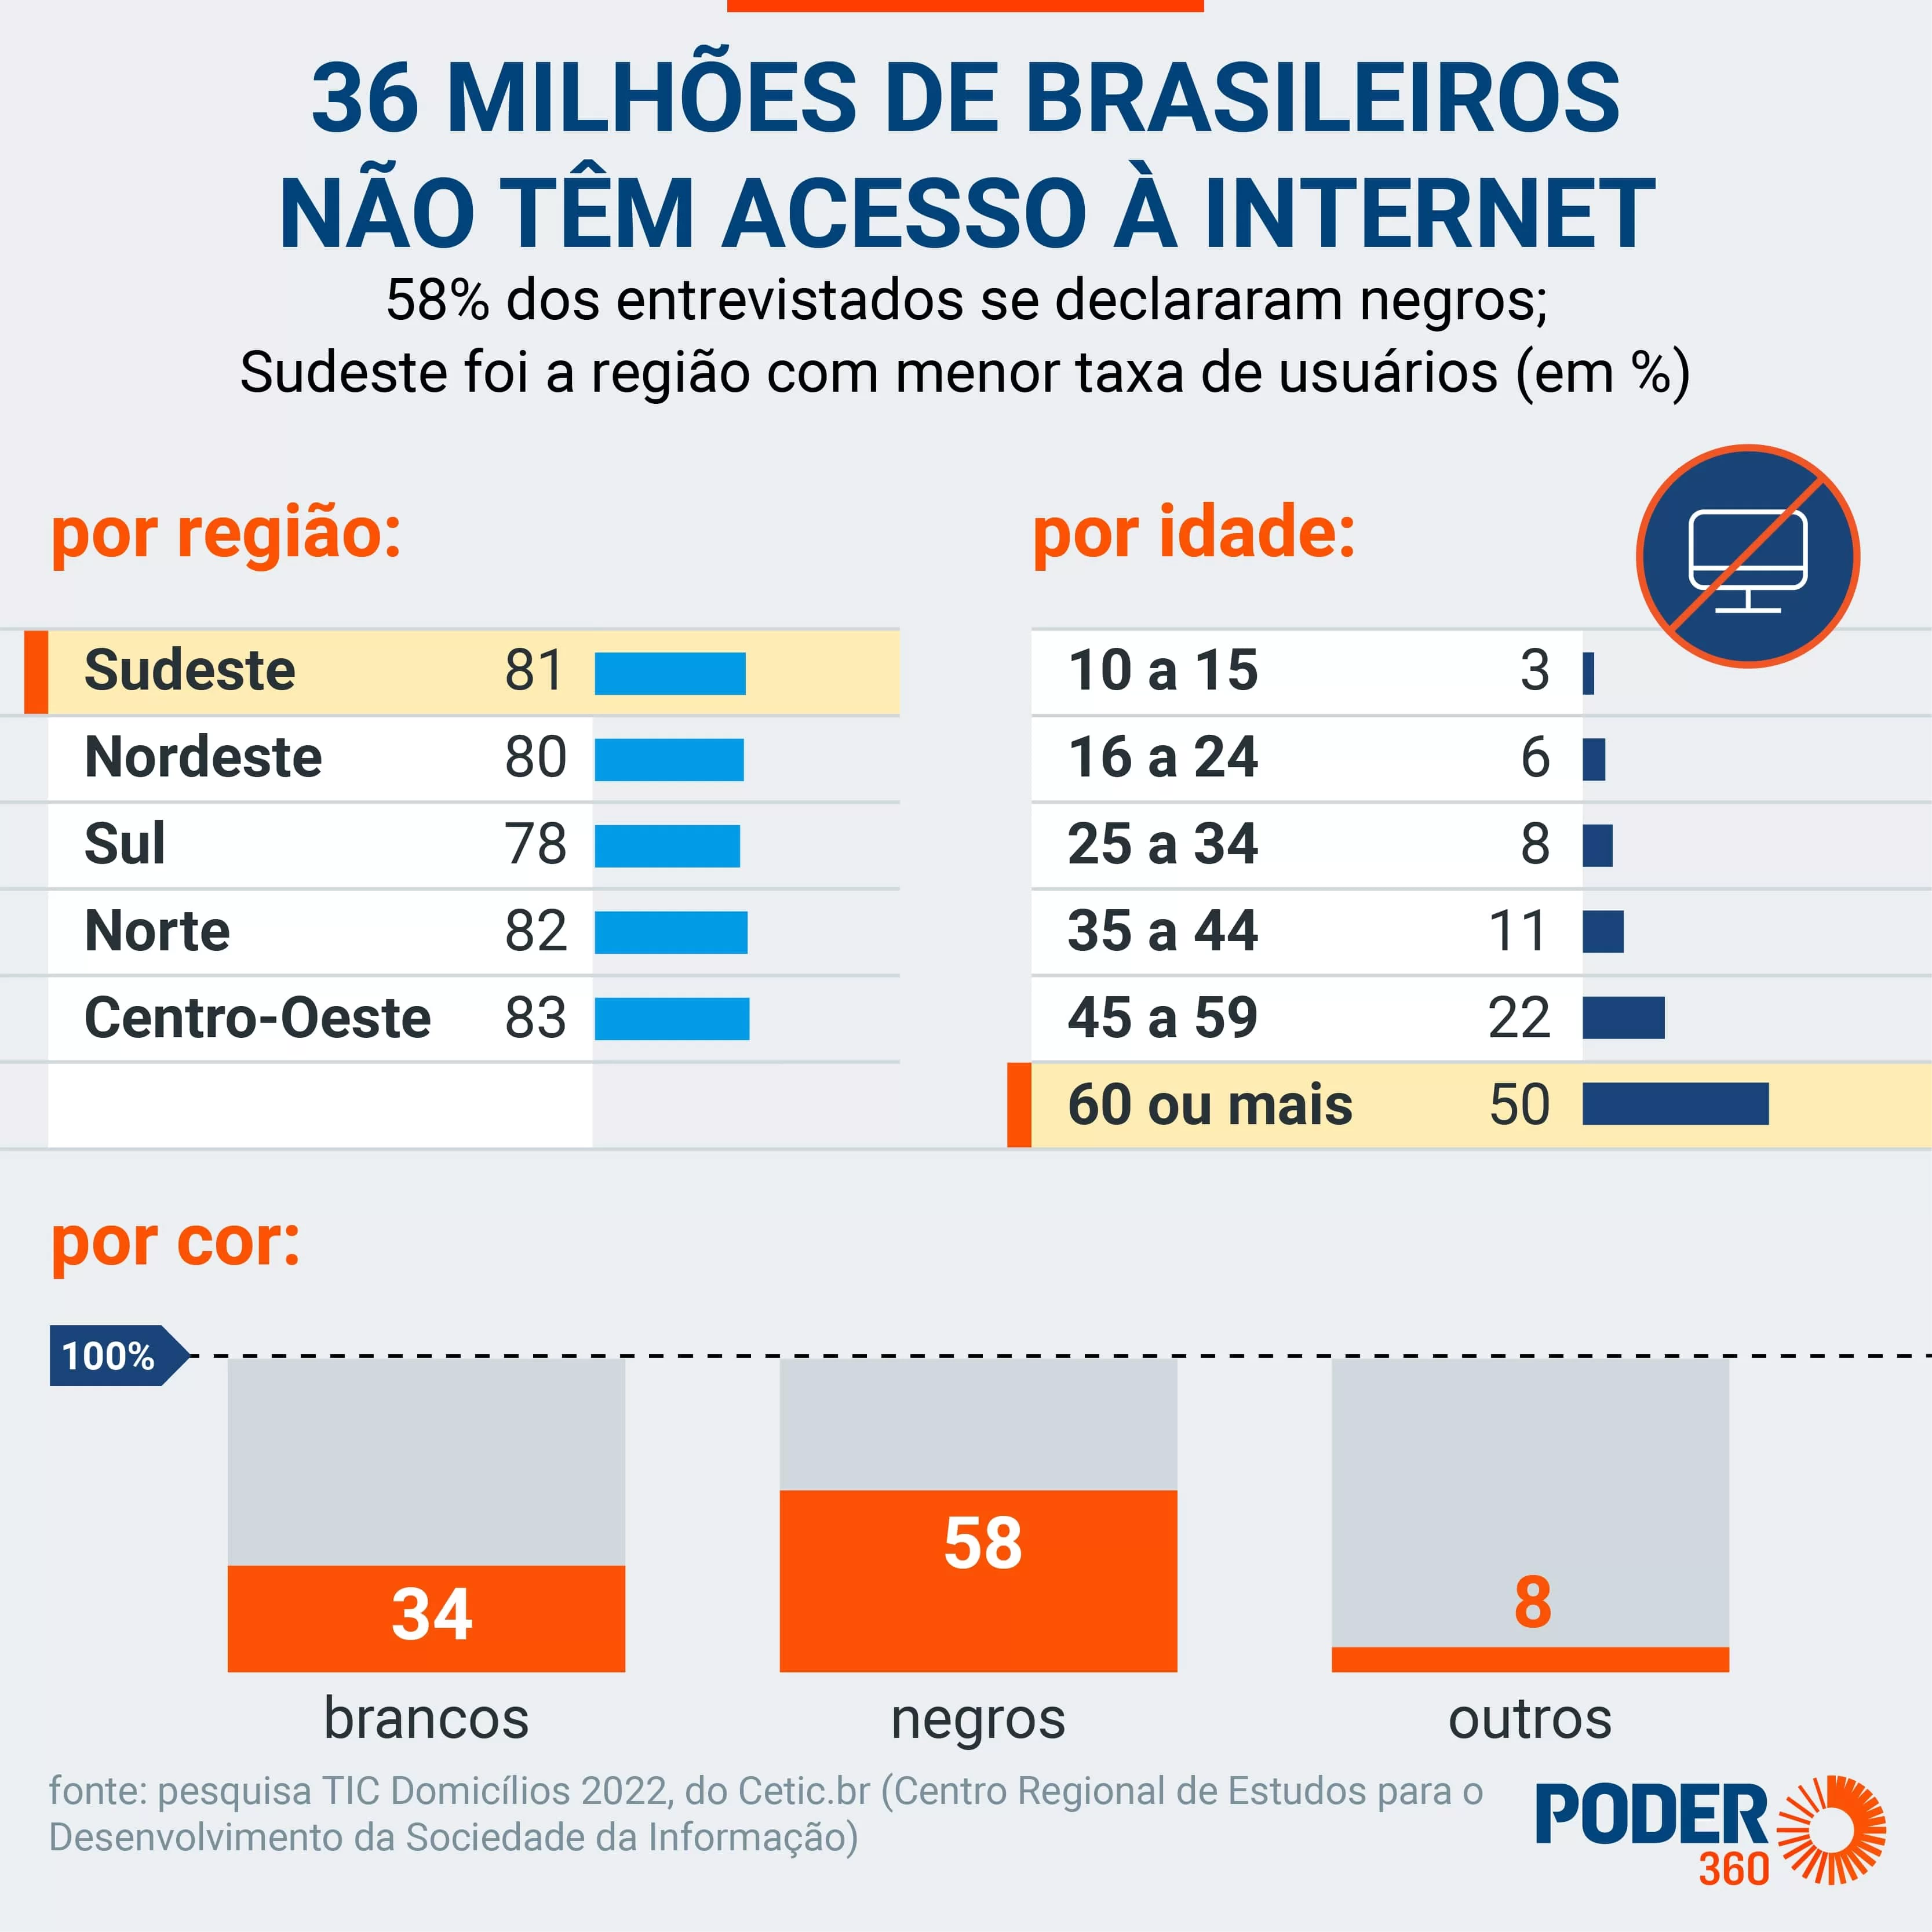 36 milhões de brasileiros não tiveram acesso à internet em 2022.